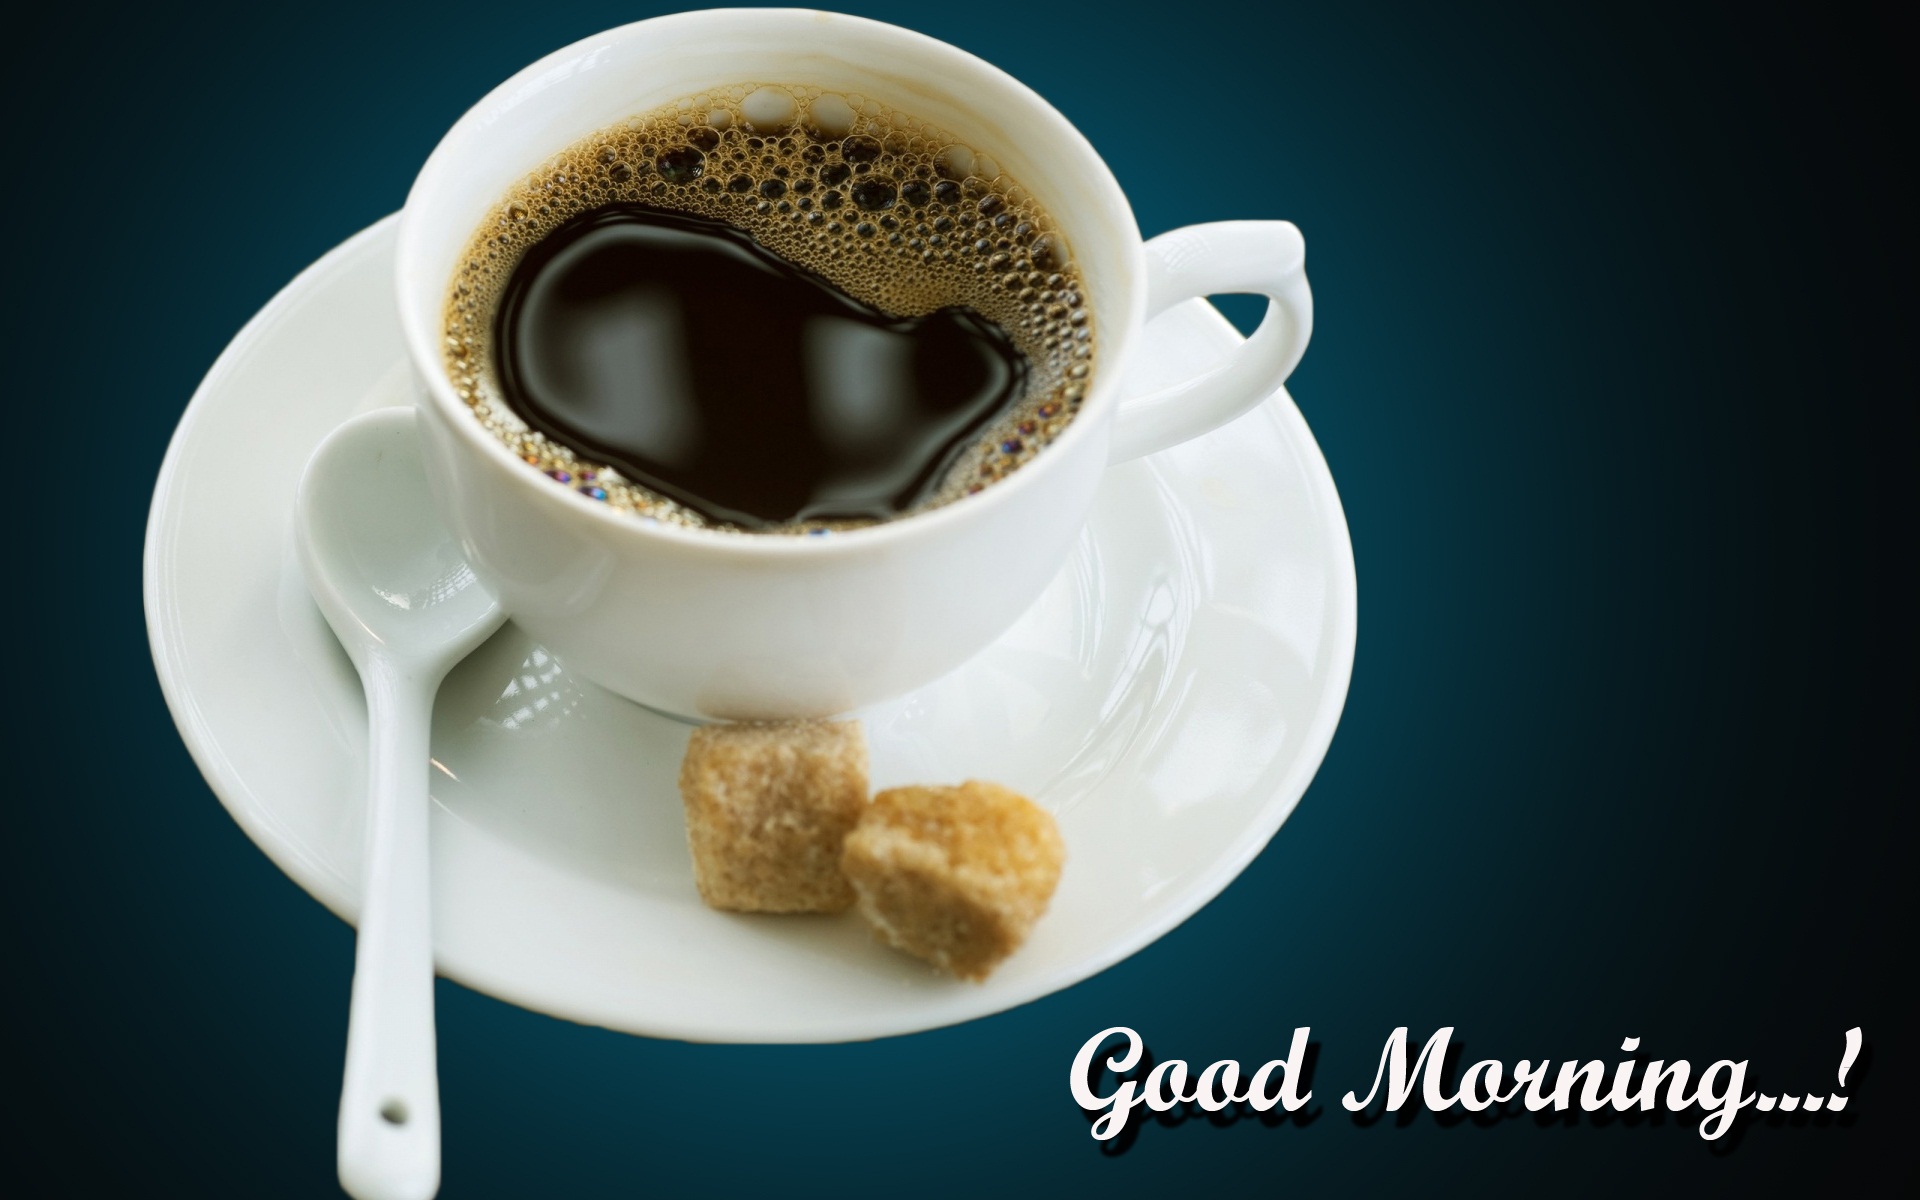 Good Morning Hd Wallpaper Tea - Macam Macam Rasa Kopi , HD Wallpaper & Backgrounds